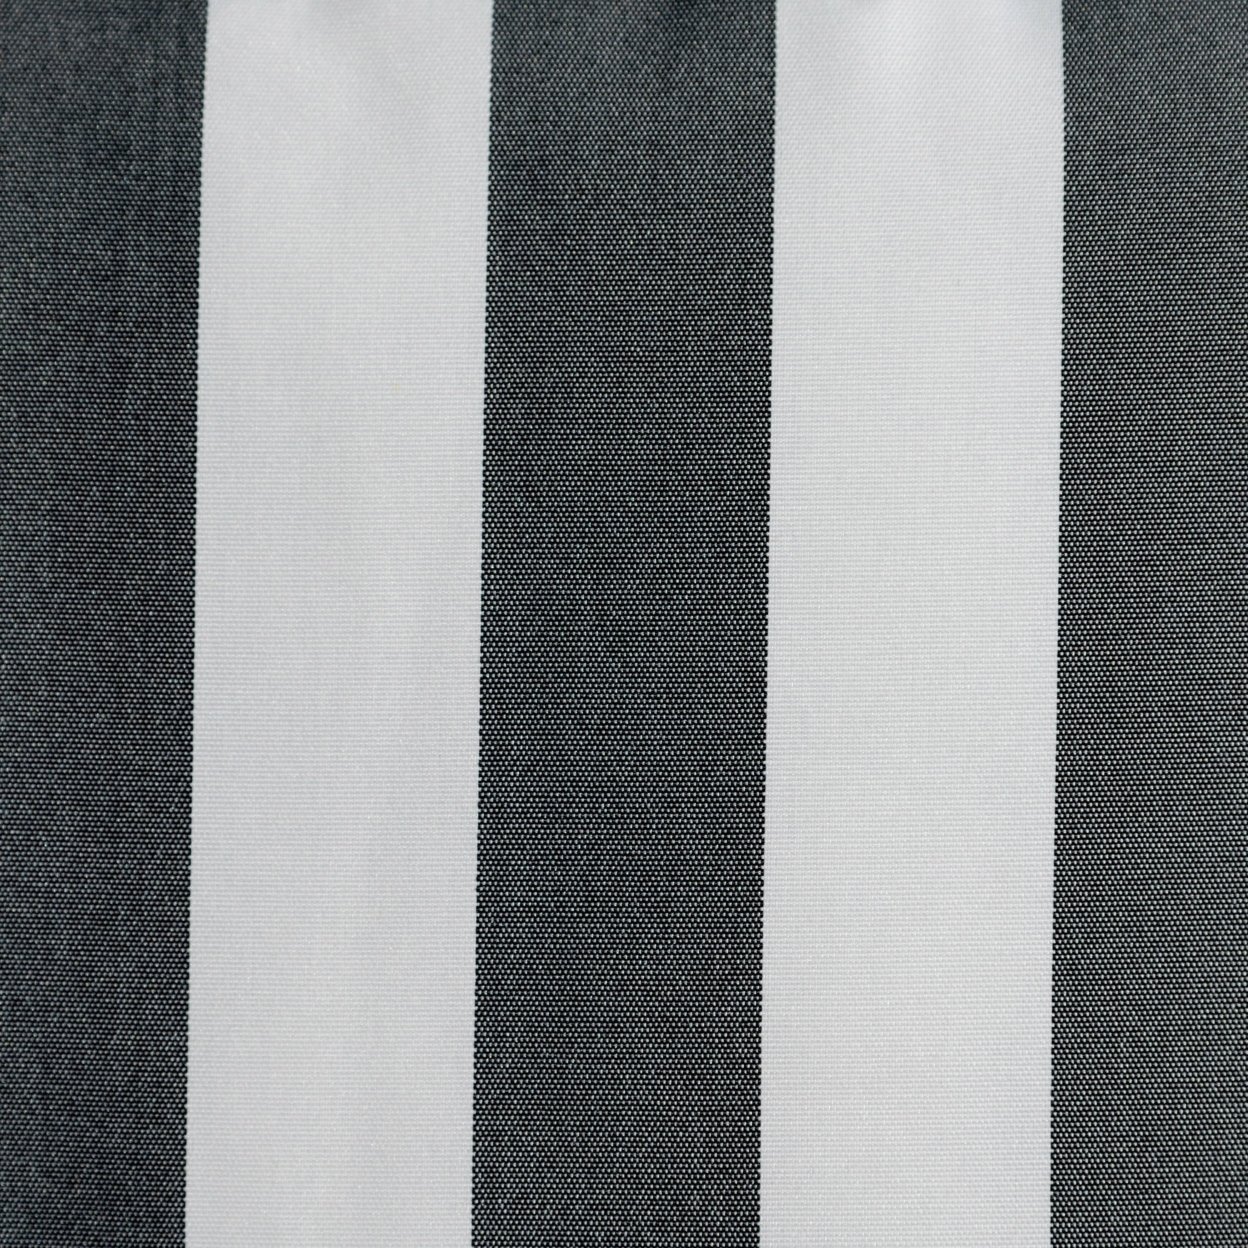 Coronado Outdoor Stripe Water Resistant Rectangular Throw Pillow - Brown/white, Set Of 2